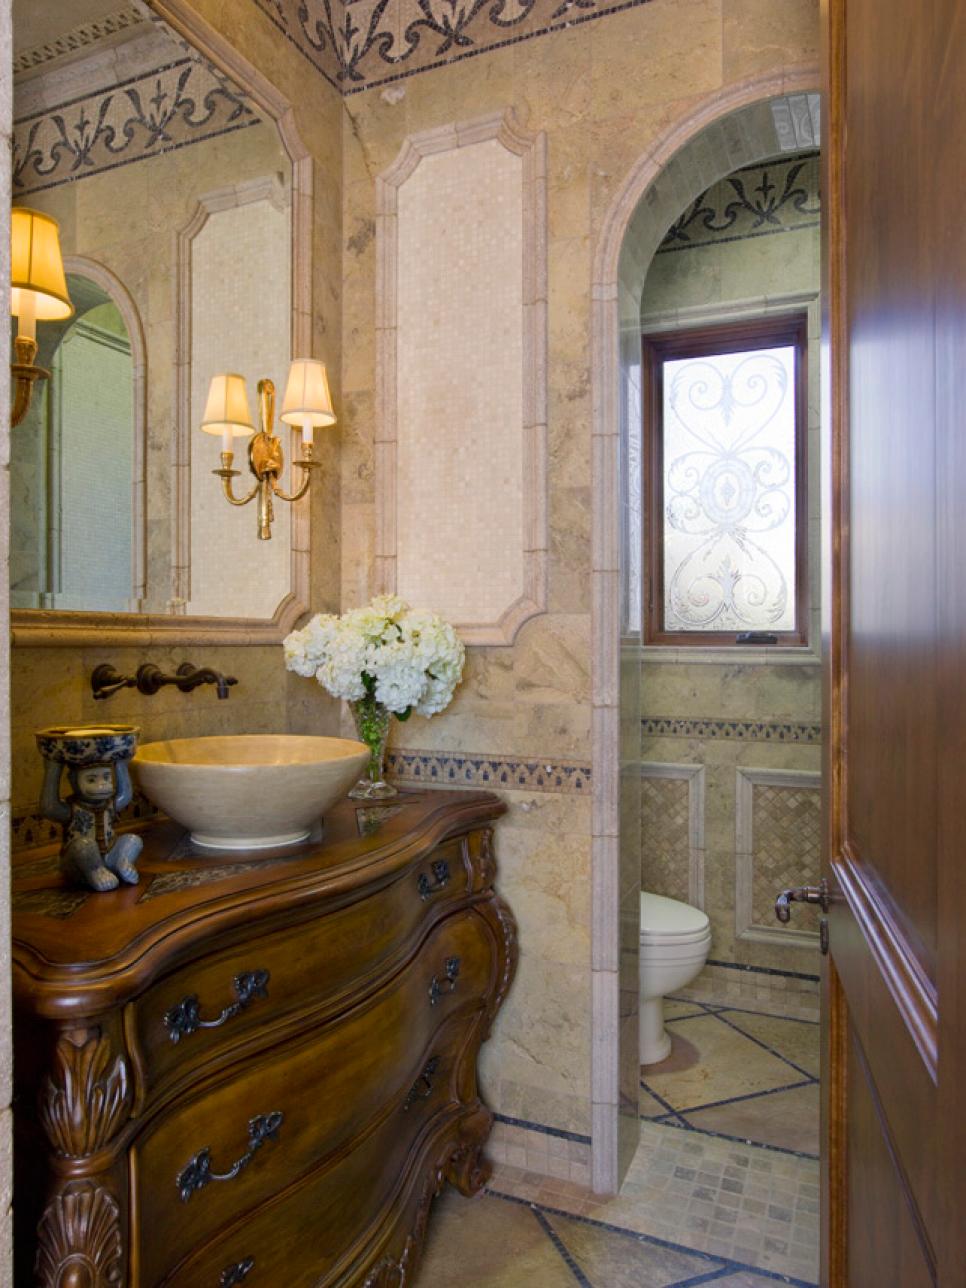 Bathroom Features Elegant Vanity, Sink Bowl